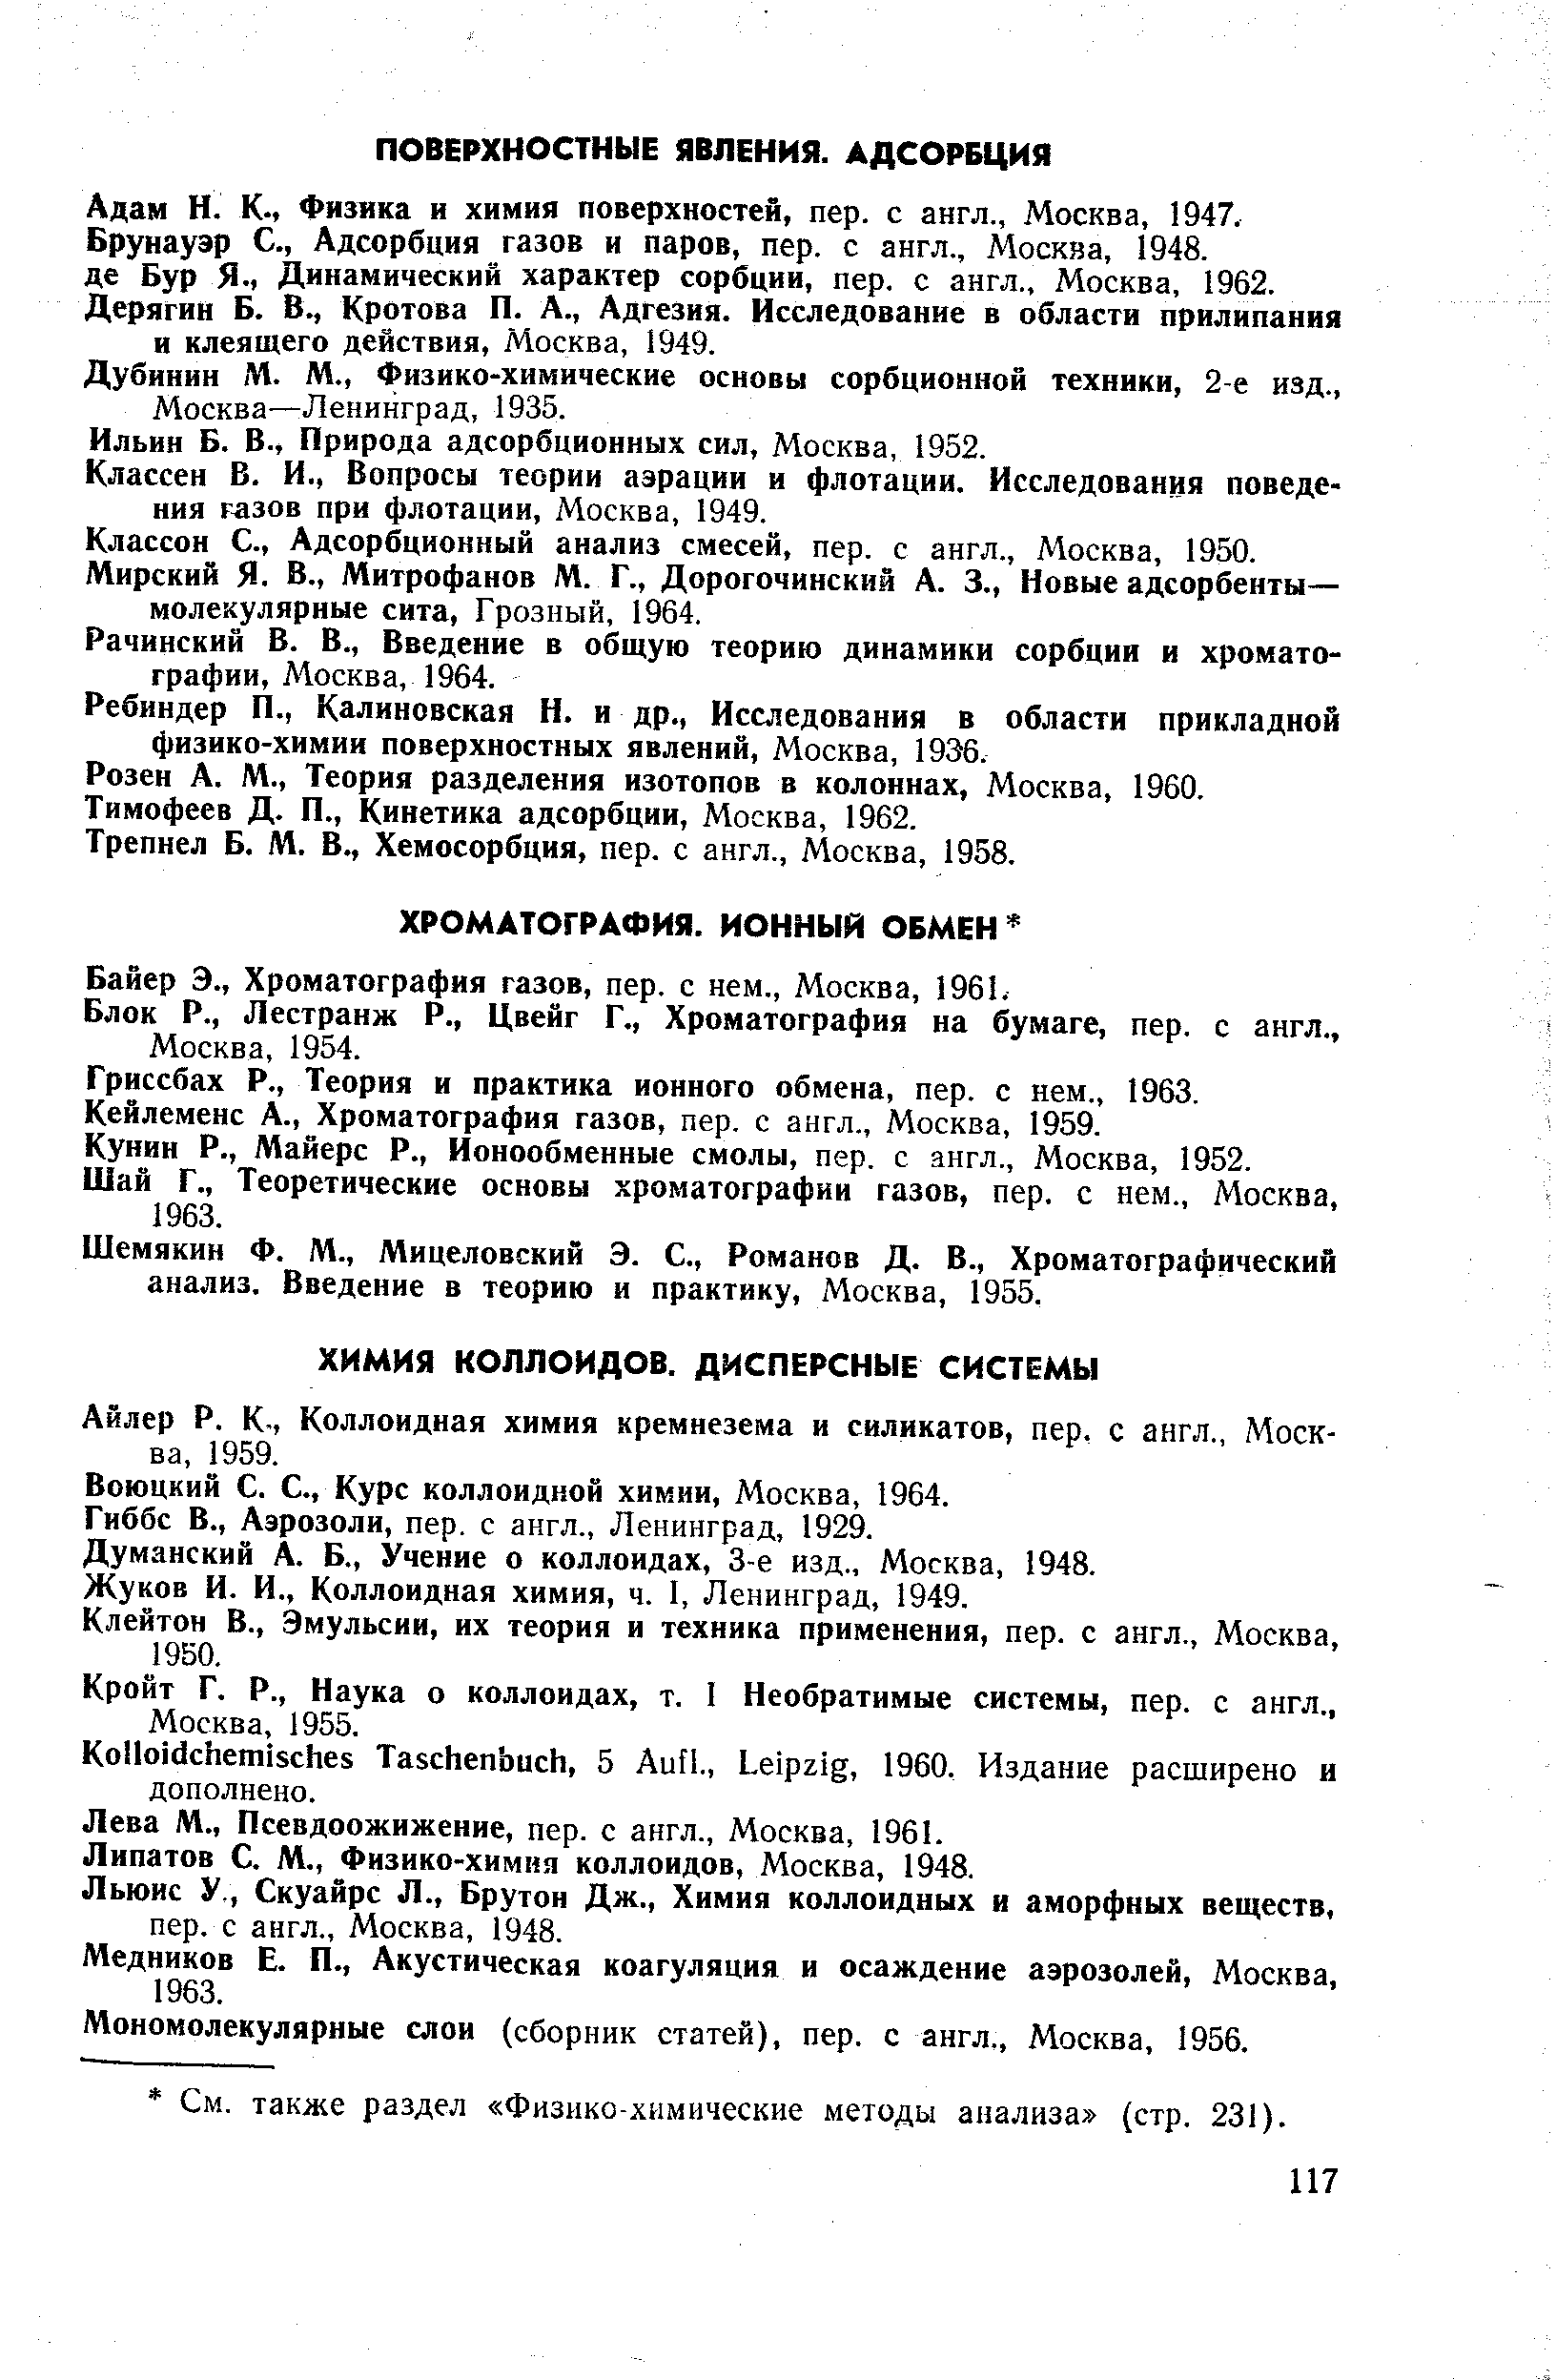 Айлер Р. К., Коллоидная химия кремнезема и силикатов, пер. с англ., Москва, 1959.